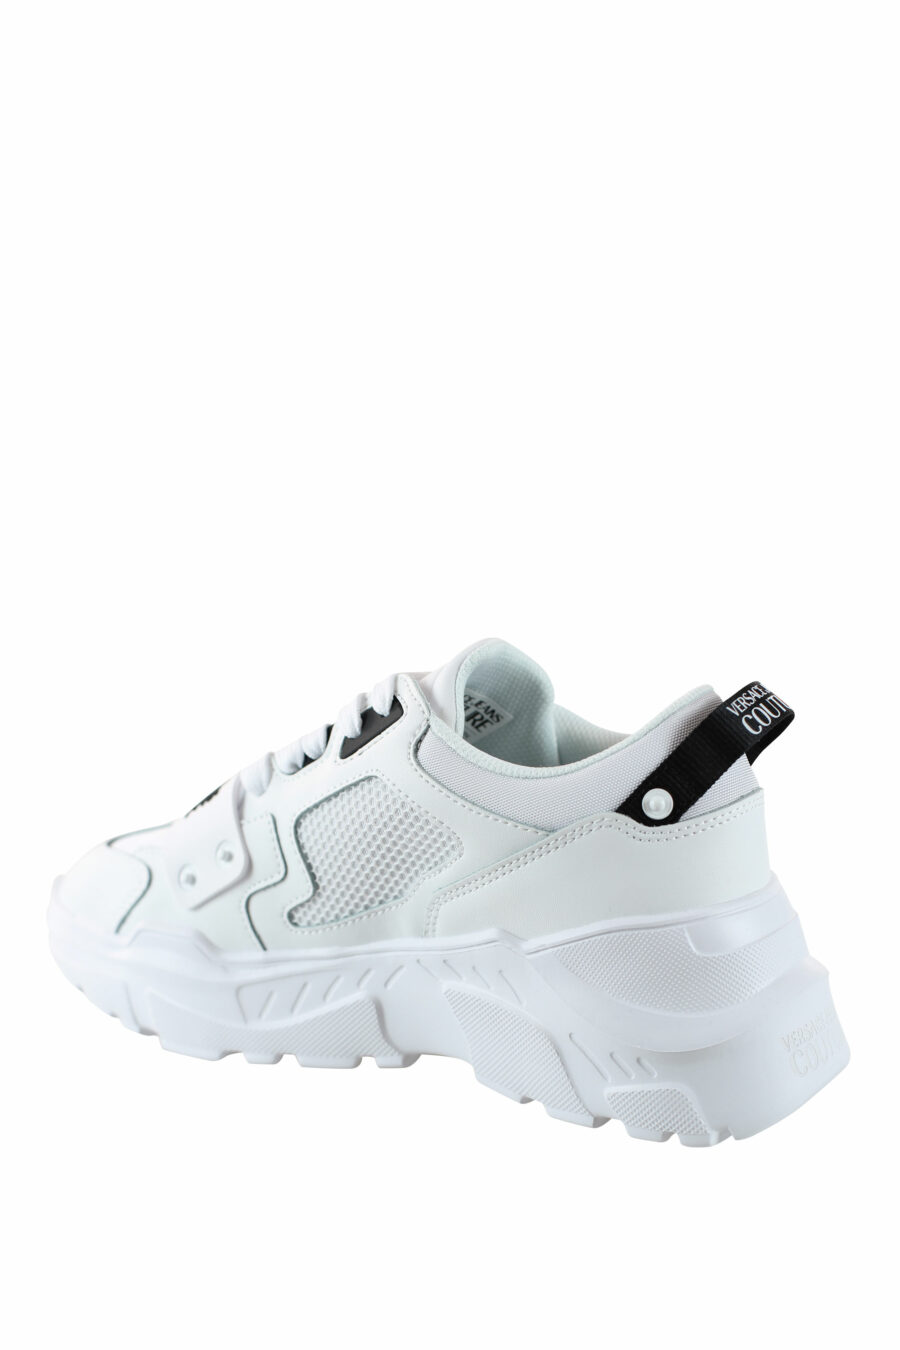 Zapatillas blancas "speedtrack" con detalles negros - IMG 4546